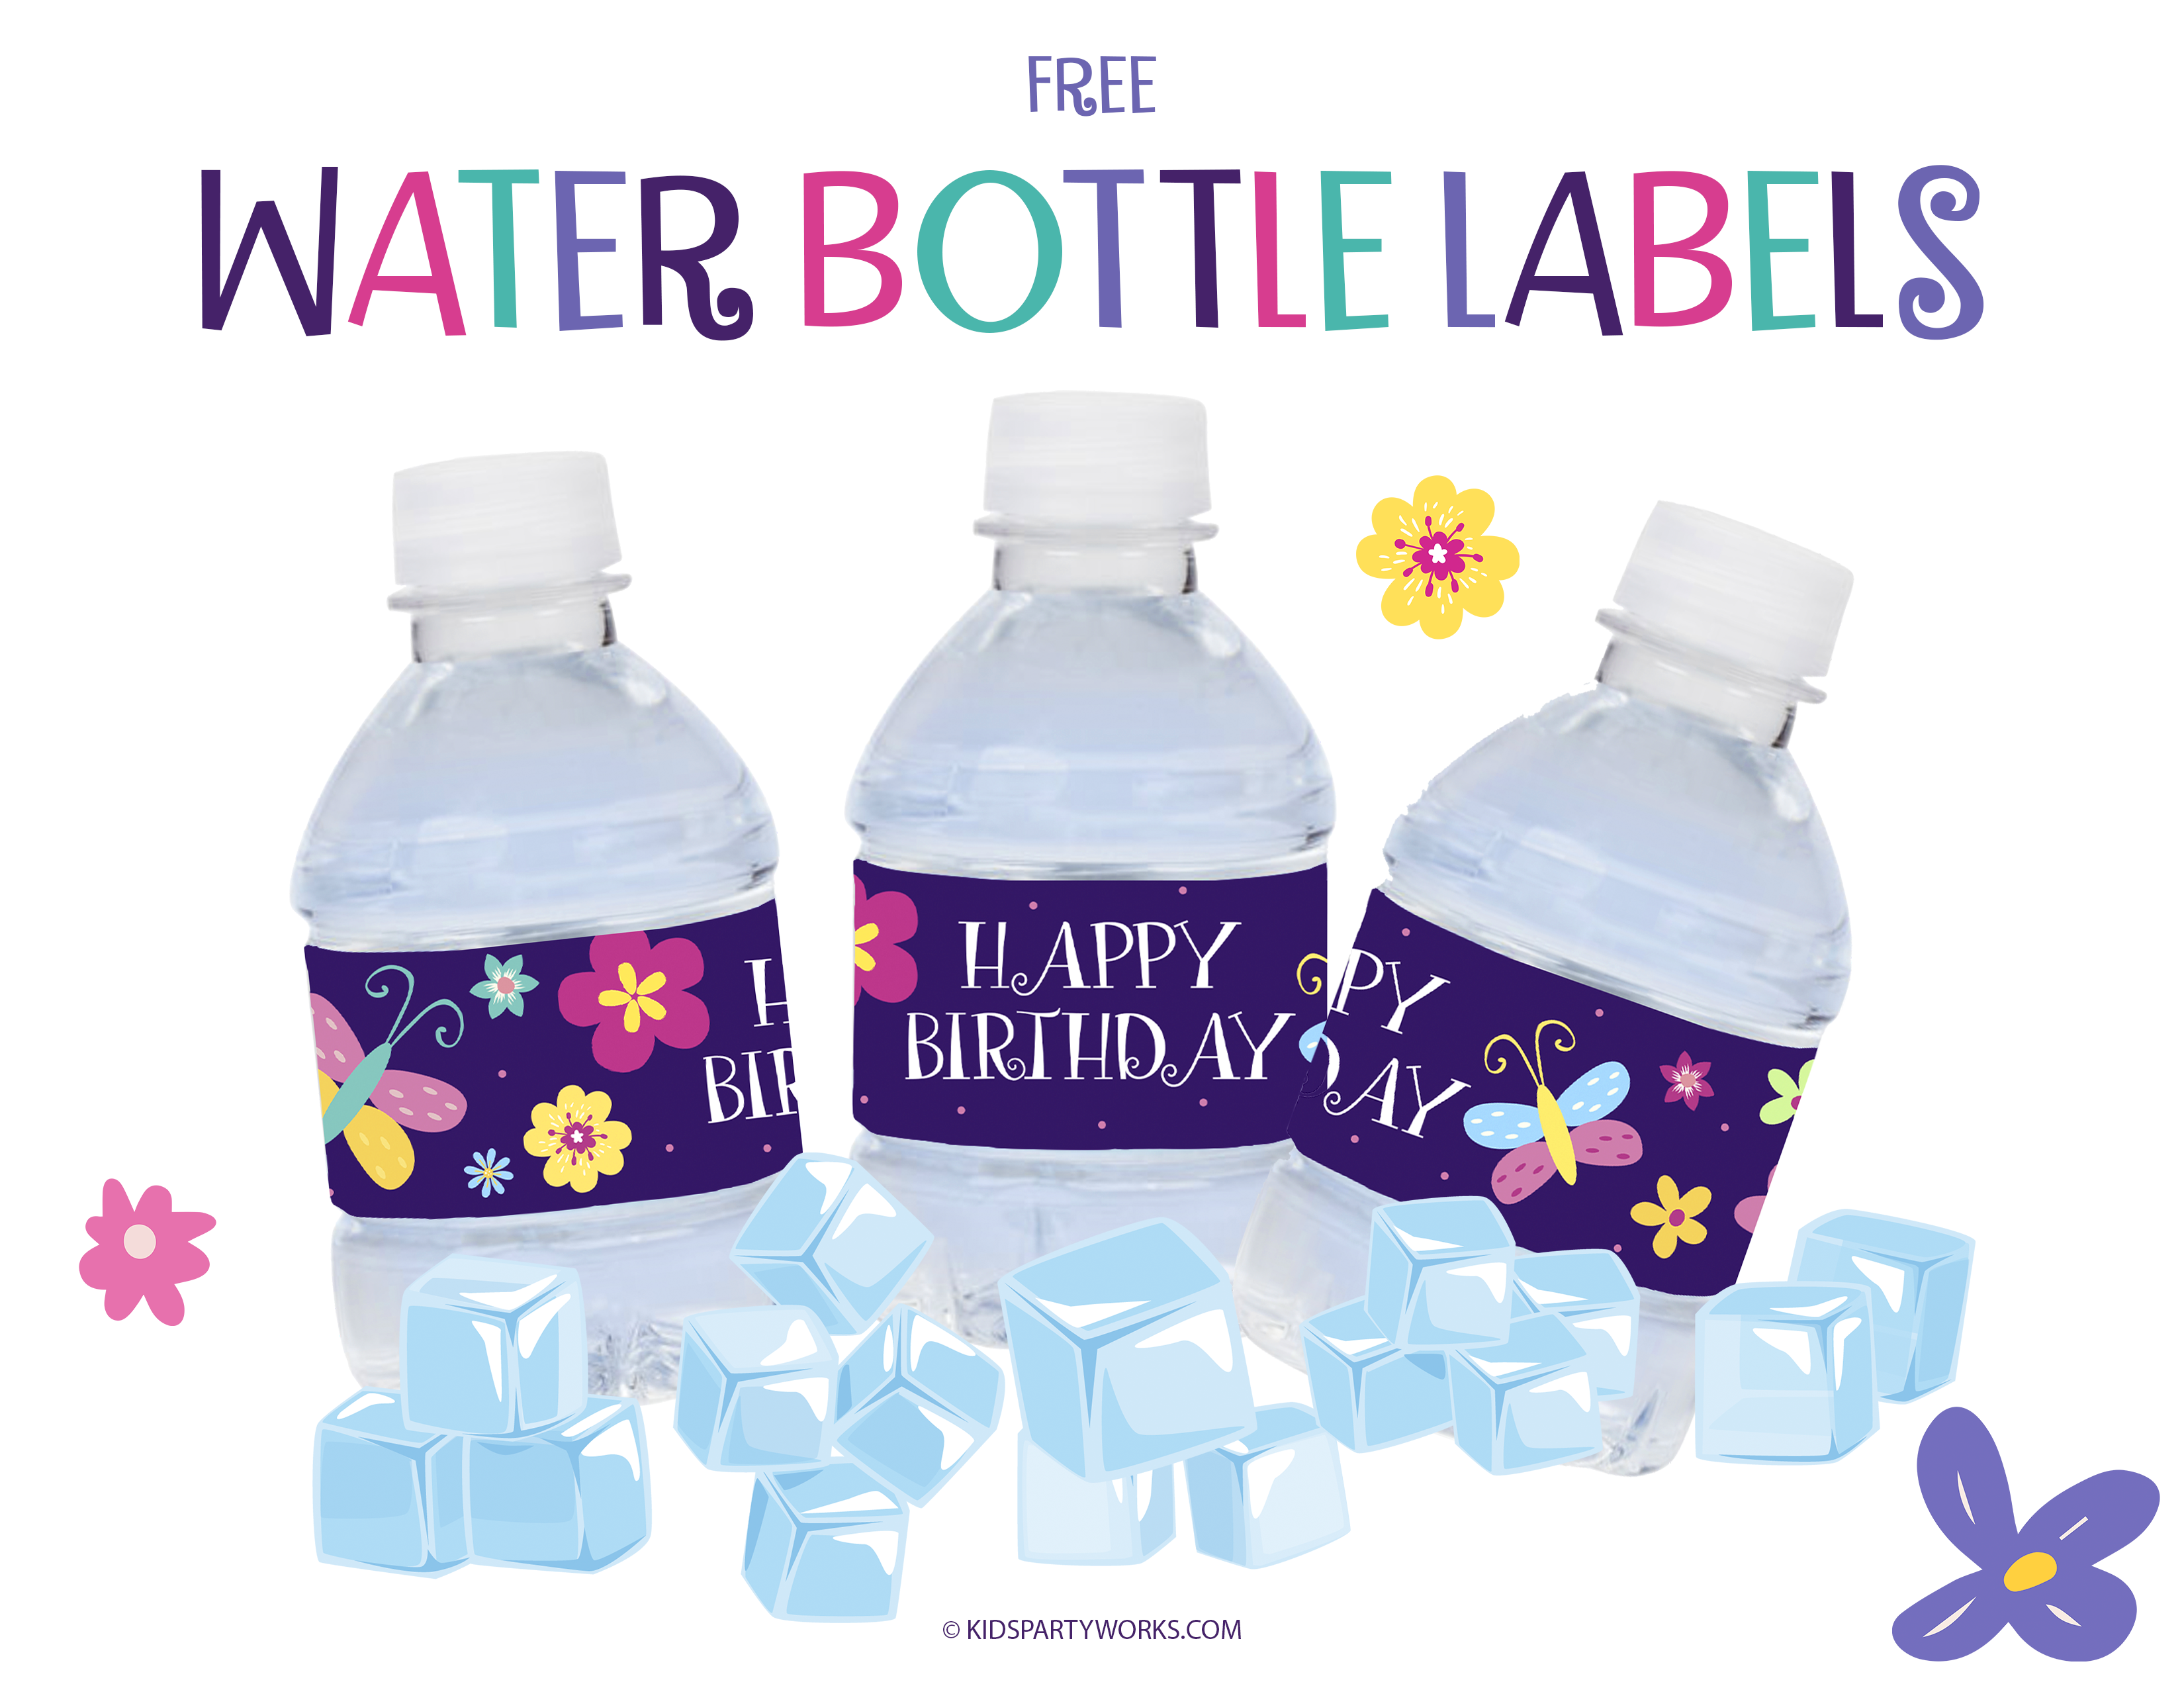 https://www.kidspartyworks.com/images/encanto-water-bottle-labels.png